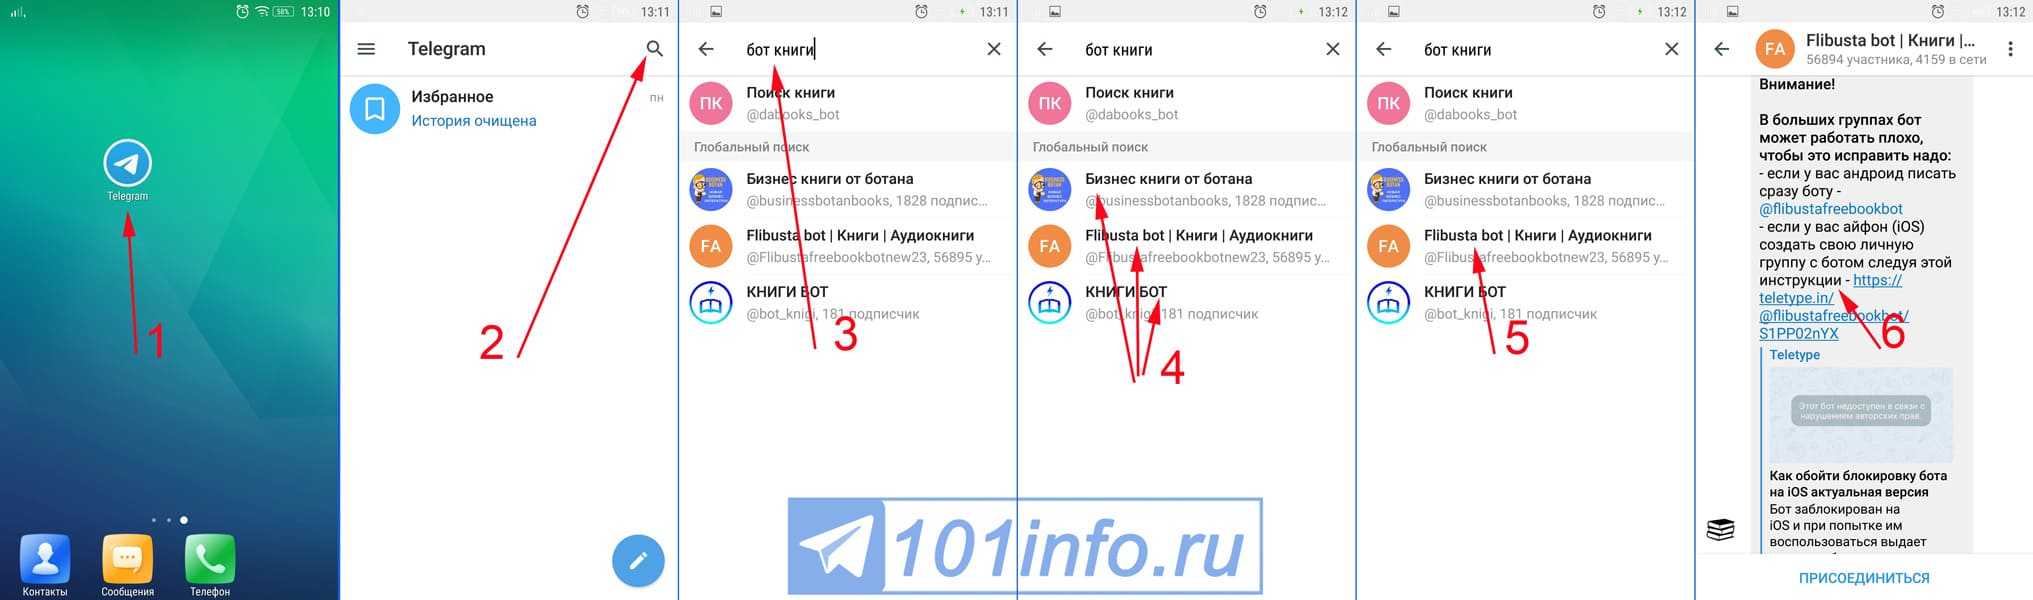 Как сделать бота в телеграм на русском самому - инструкция